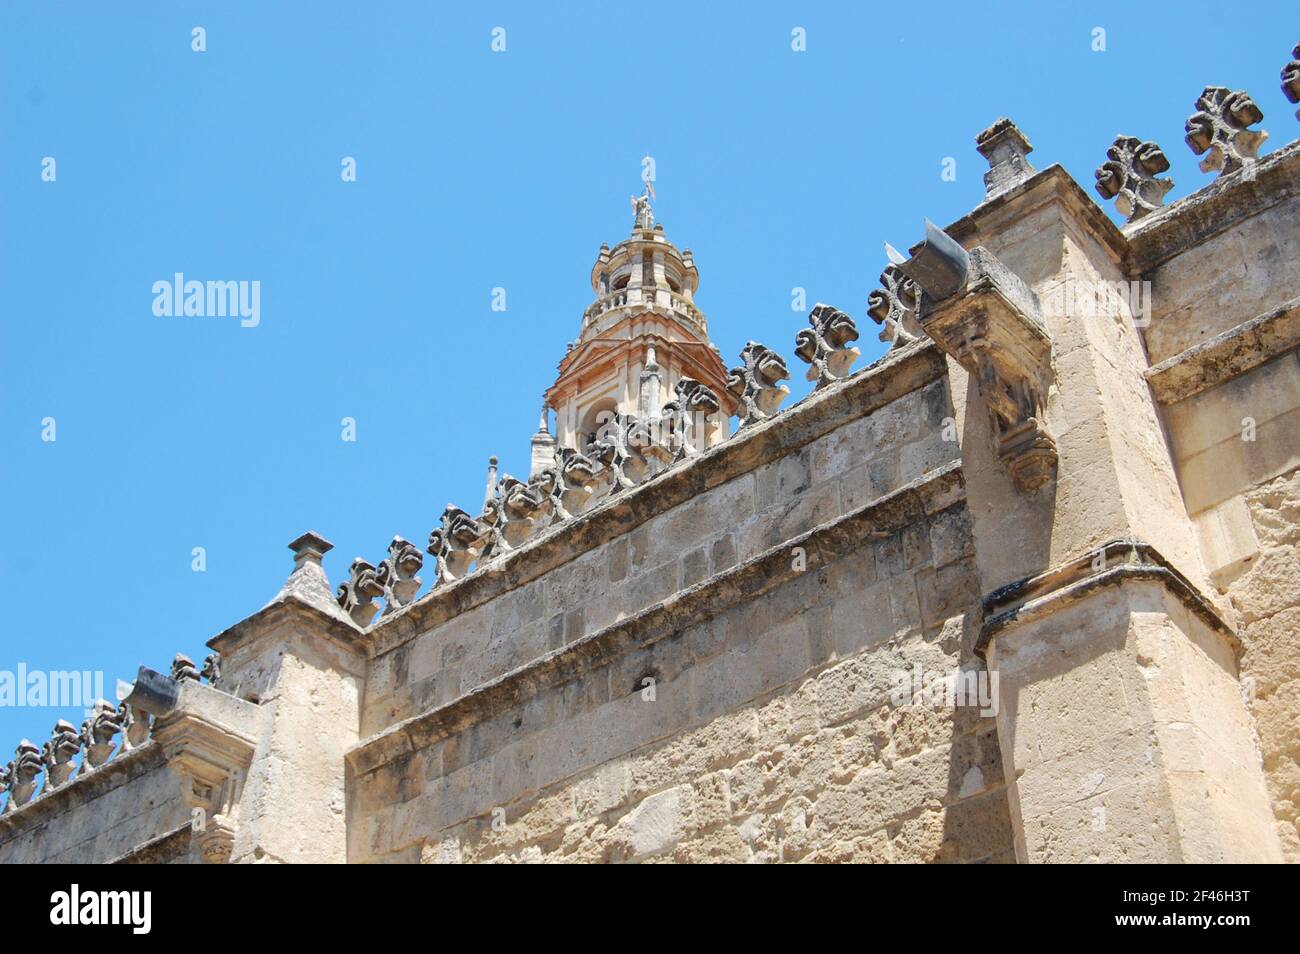 Moschee-Kathedrale von Córdoba (die Kathedrale unserer Lieben Frau von der Himmelfahrt). Islamische und gotische Architektur aus dem Jahr 785 n. Chr. Mezquita de Córdoba. Stockfoto